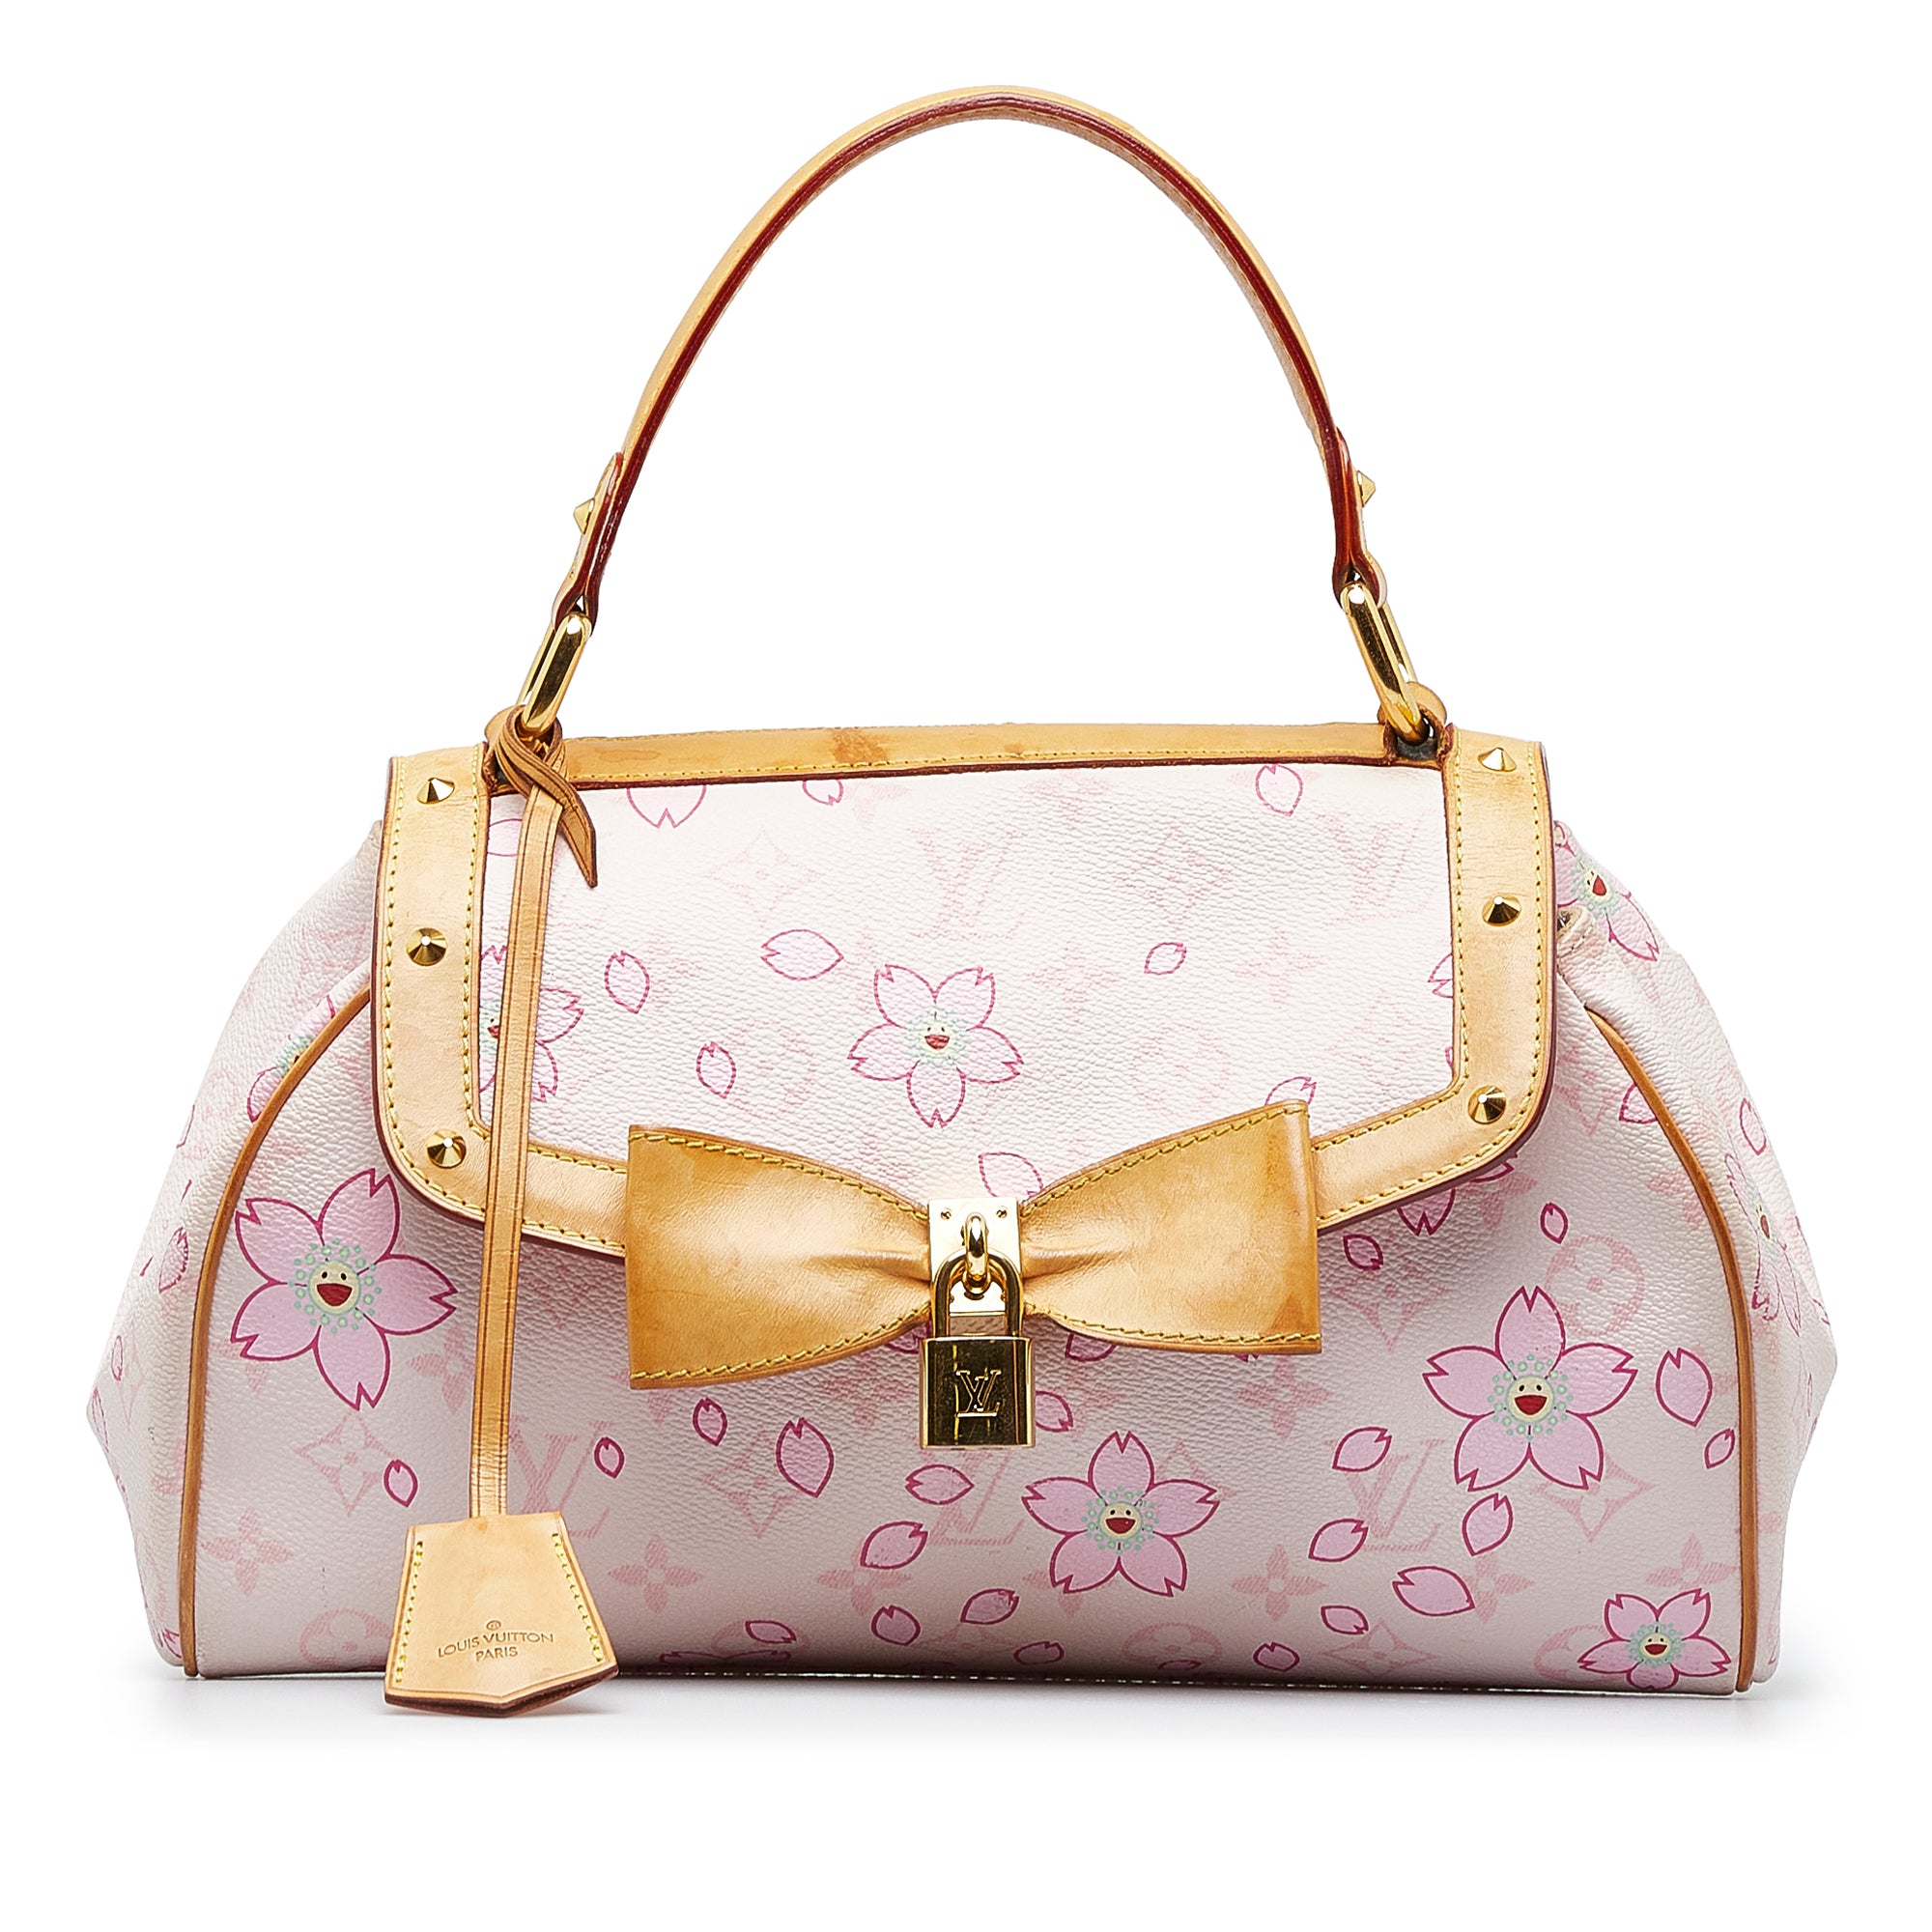 Louis Vuitton Cherry Blossom Retro Sac Shoulder Bag - $1,150